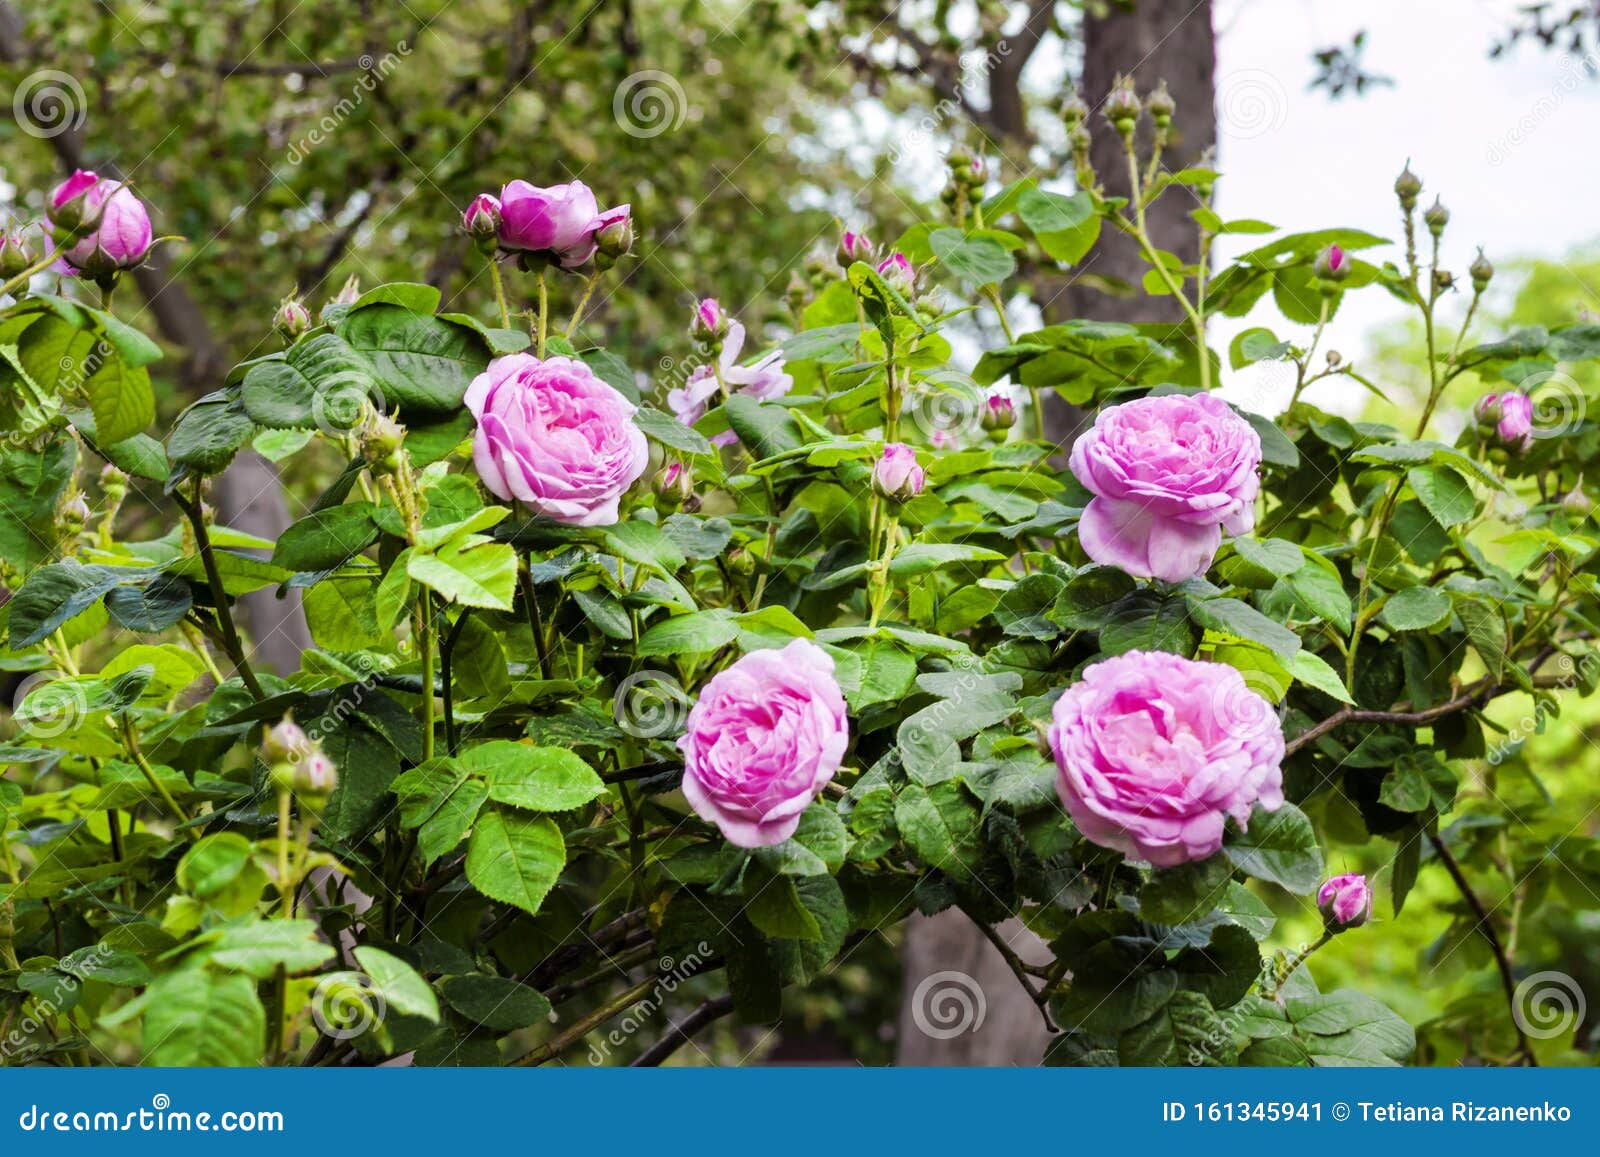 rosa centifolia rose des peintres flowers in summer garden